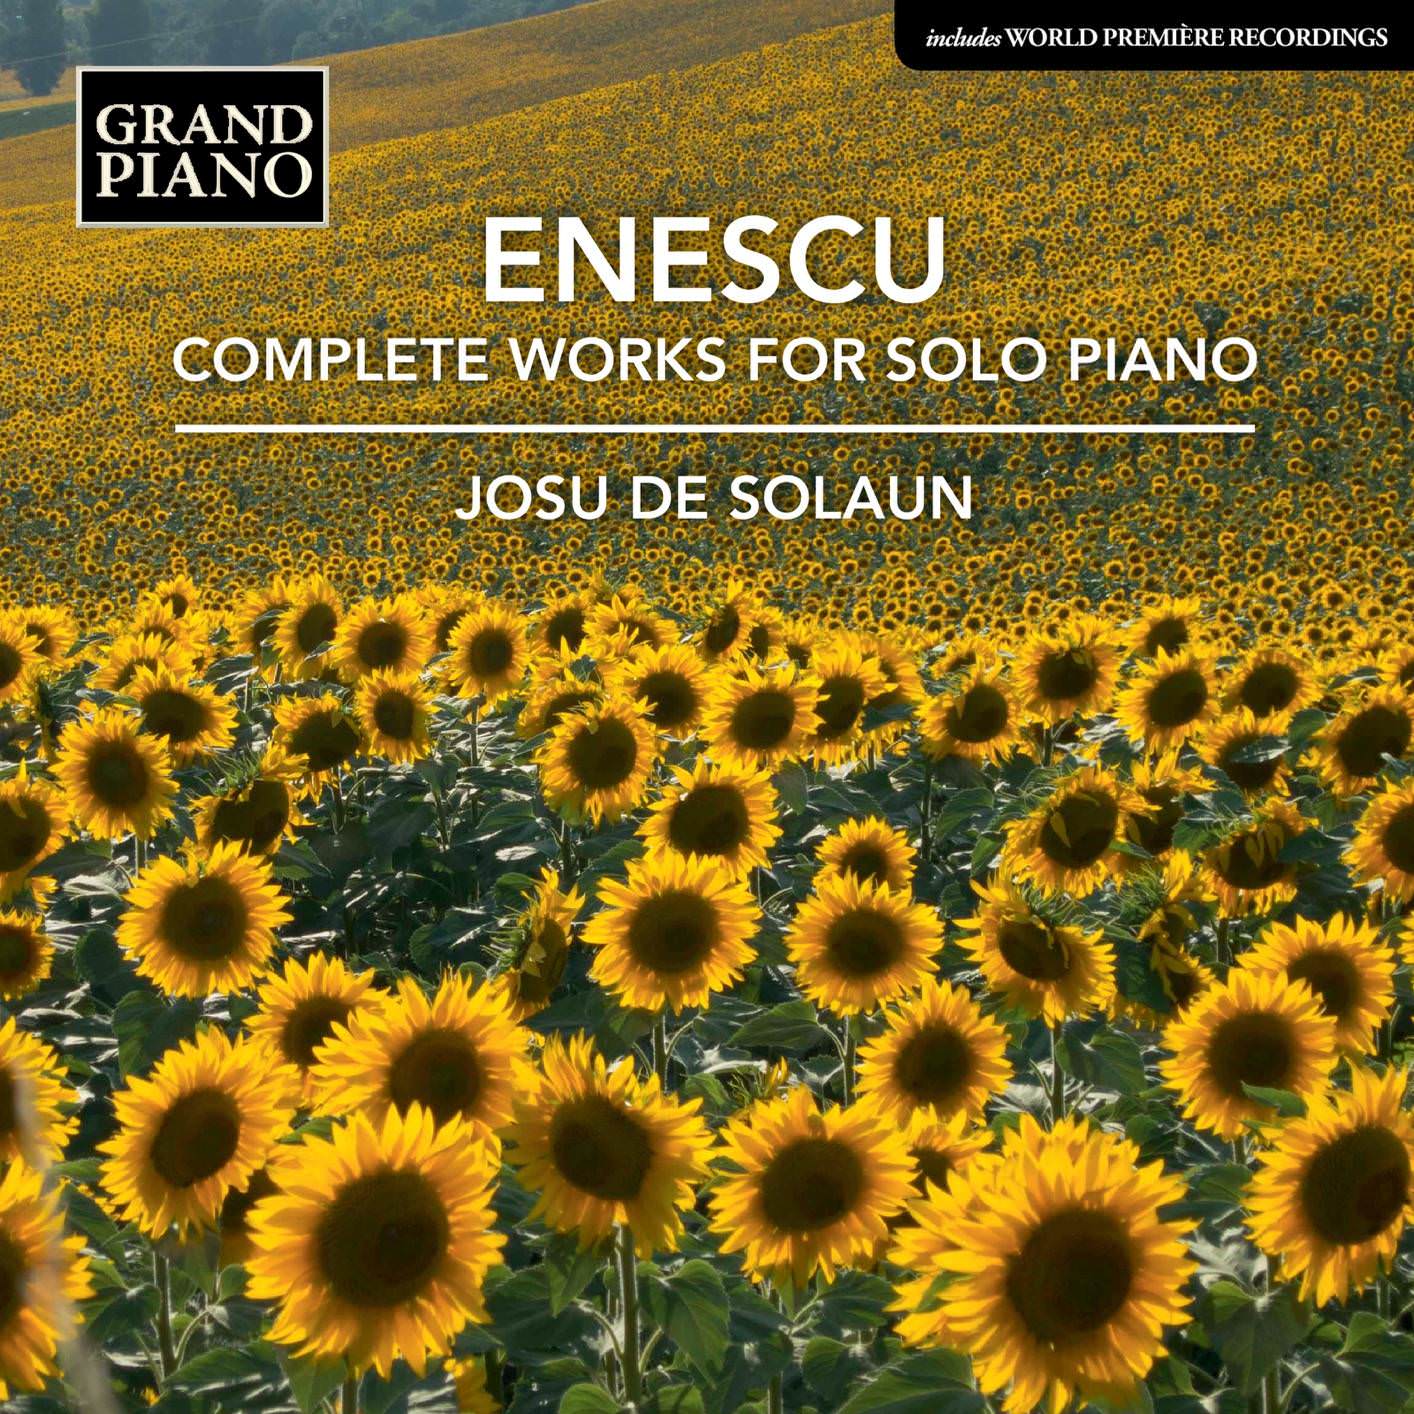 Josu de Solaun – Enescu: Complete Works for Solo Piano (2018) [FLAC 24bit/96kHz]